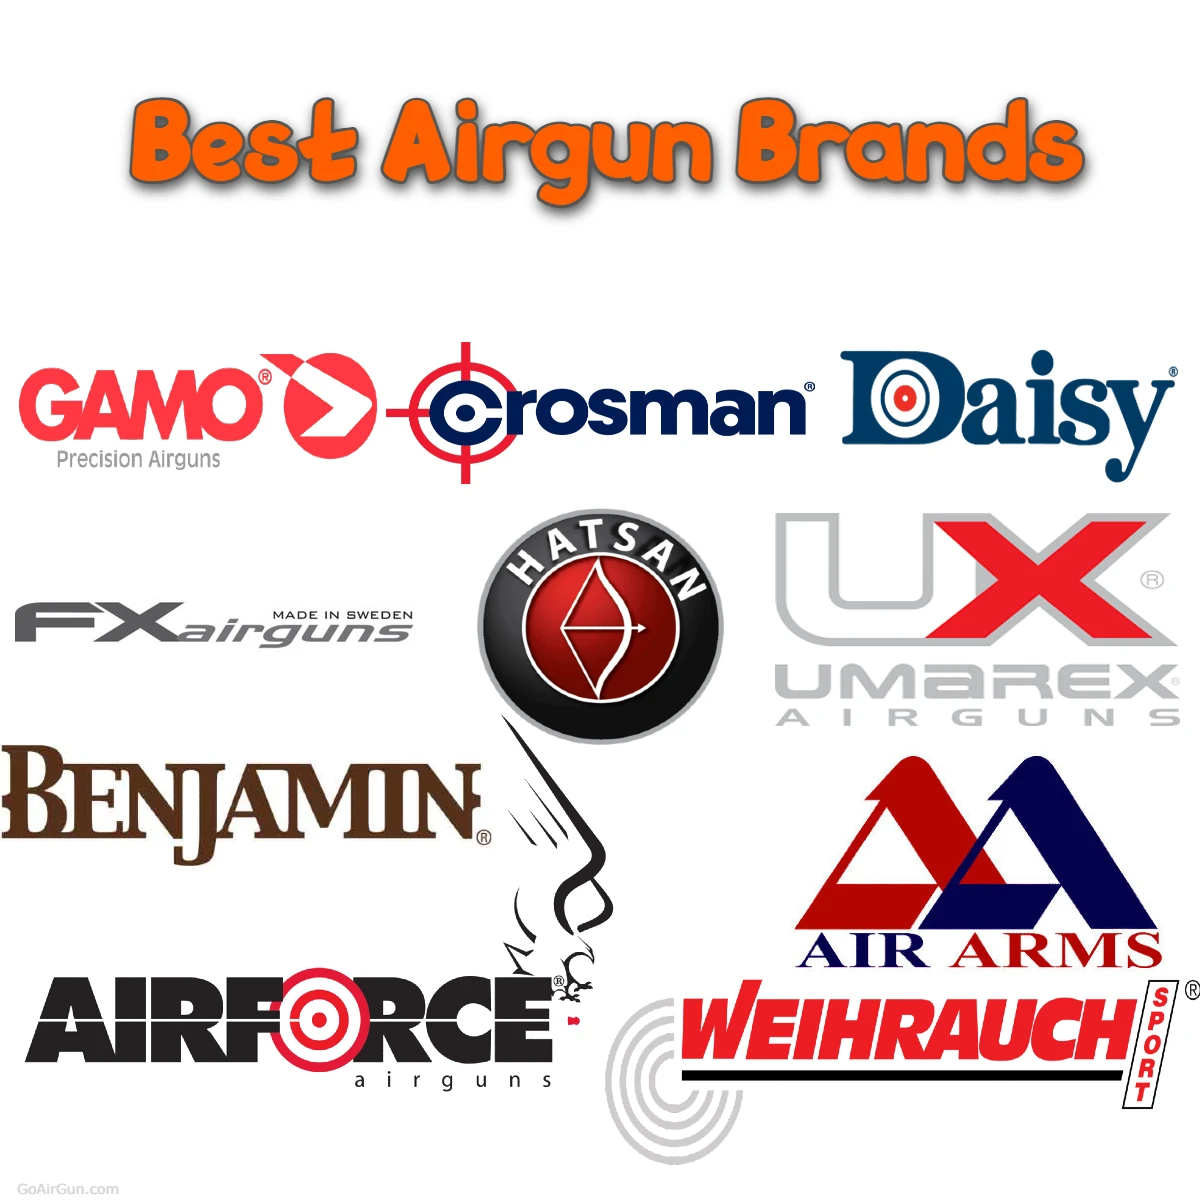 Best Airgun Brands